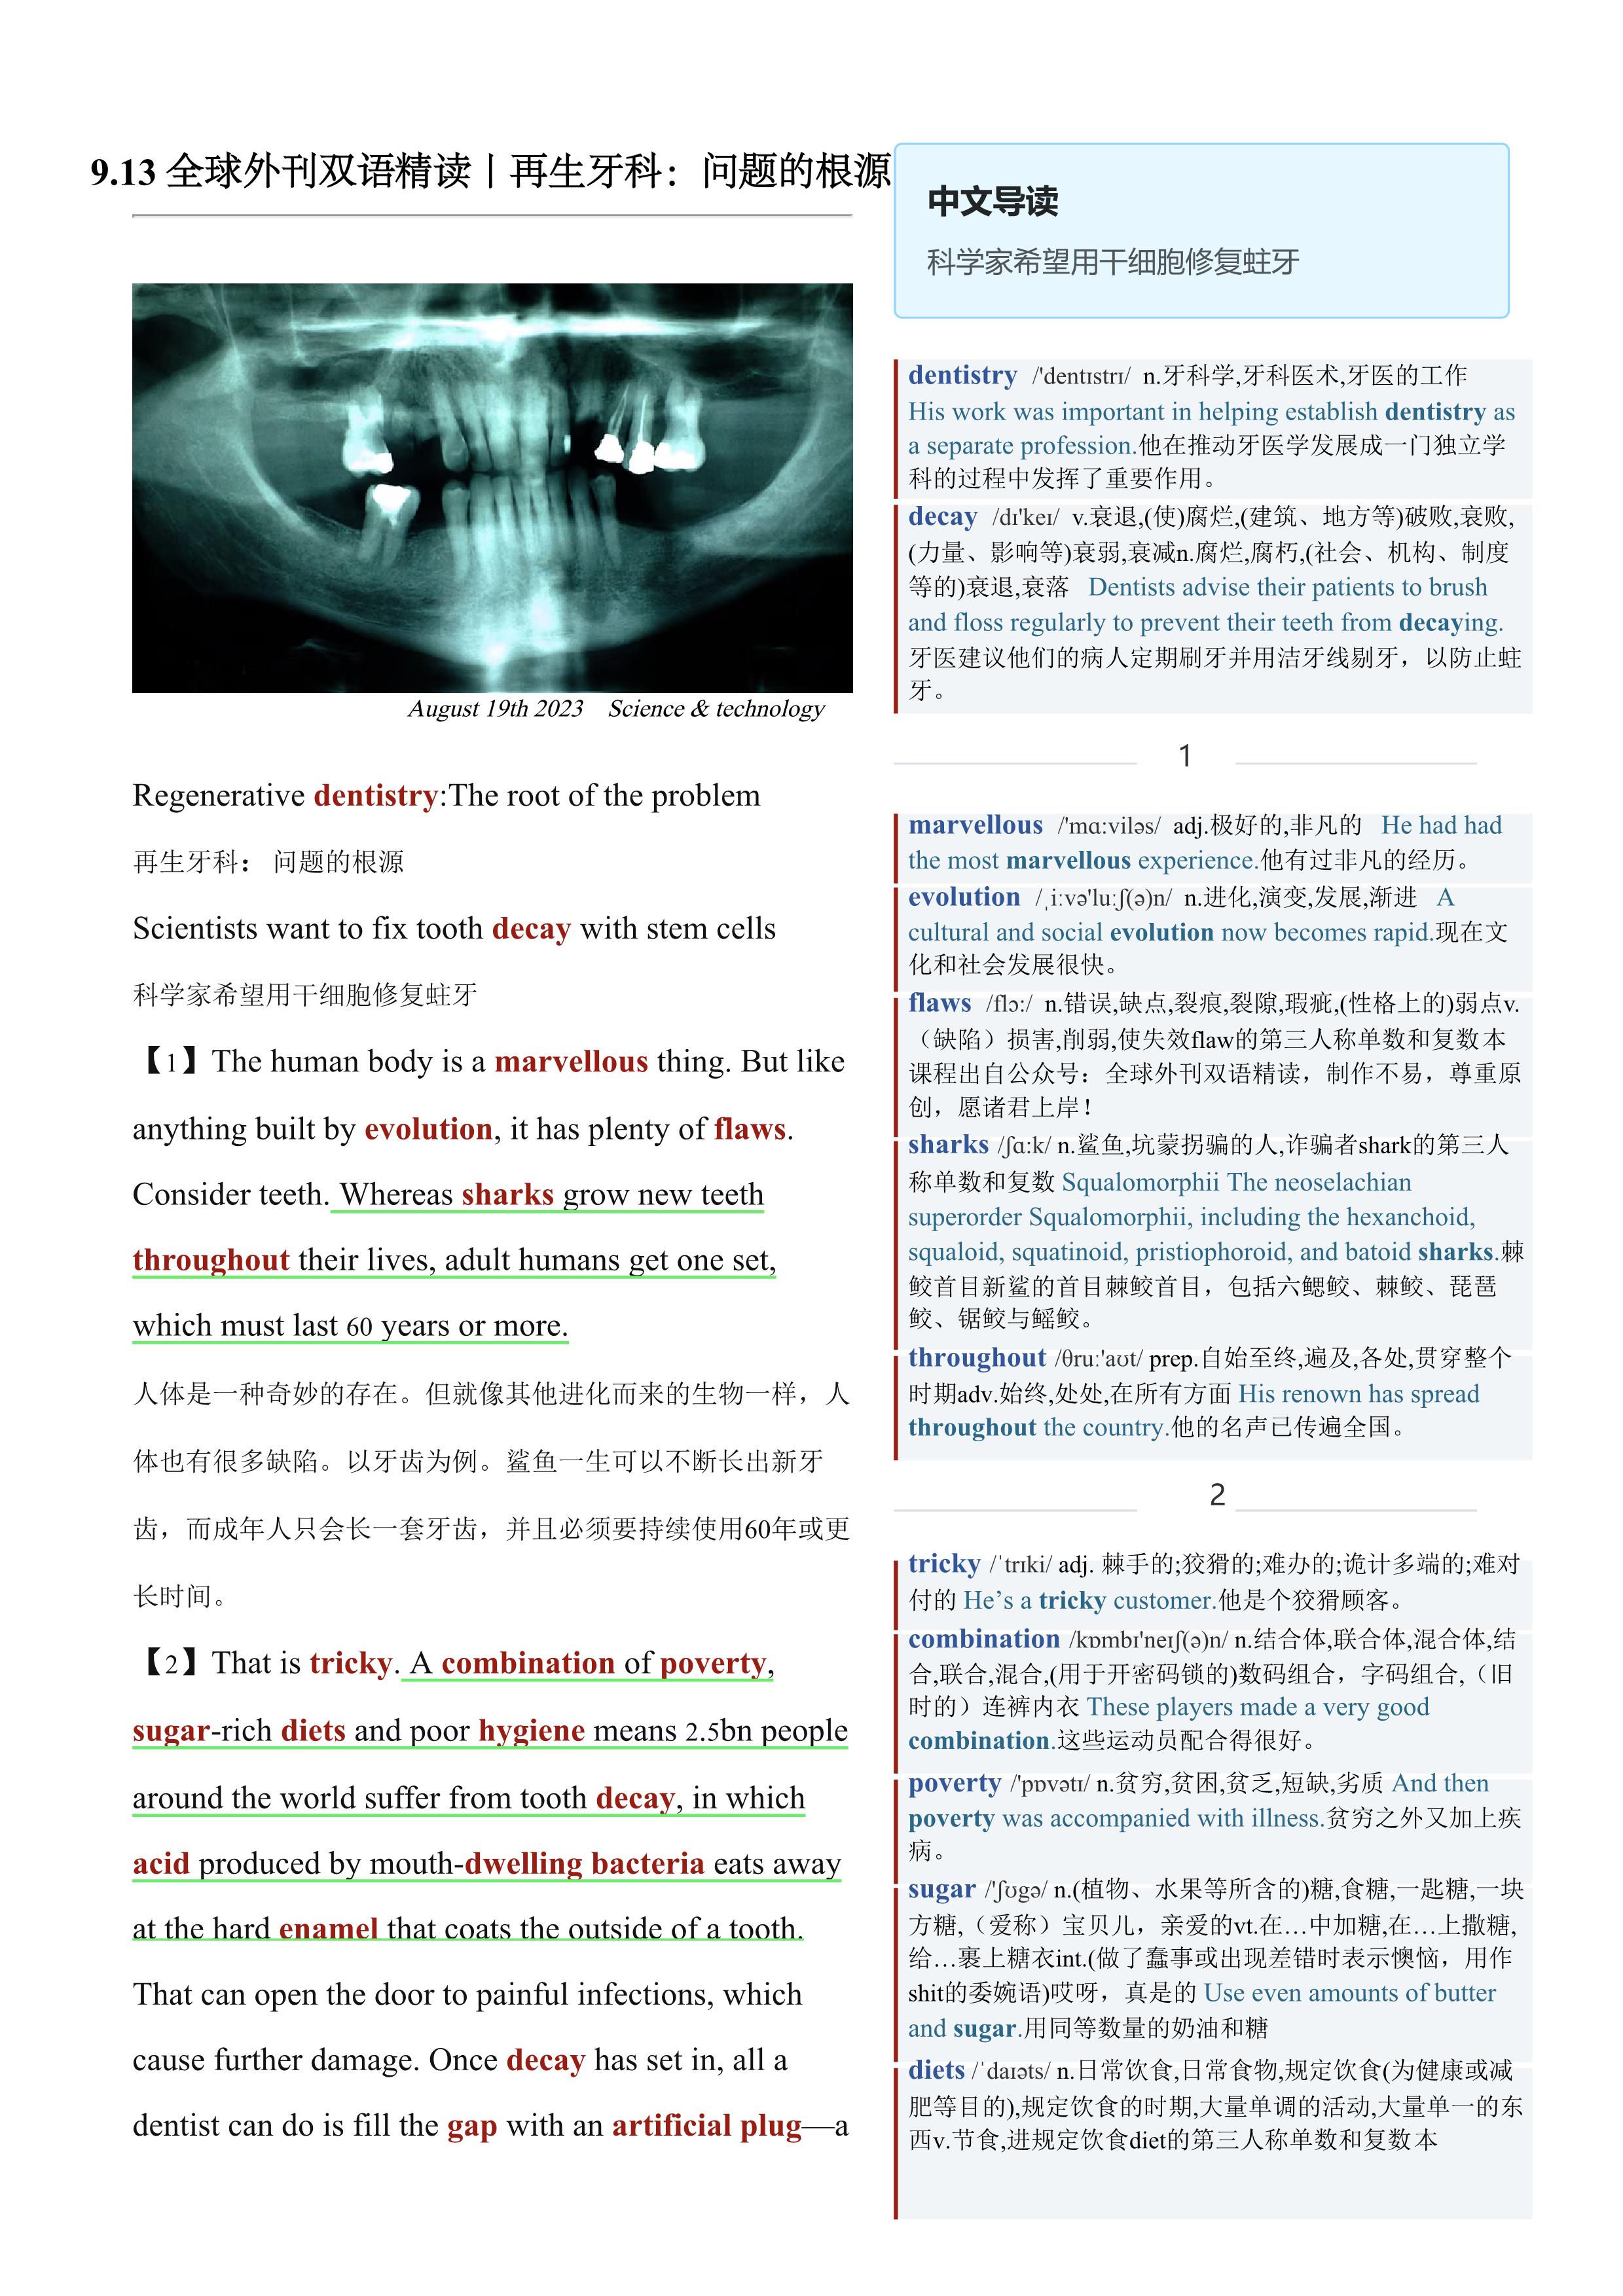 2023.09.13 经济学人双语精读丨再生牙科：问题的根源 (.PDF/DOC/MP3)